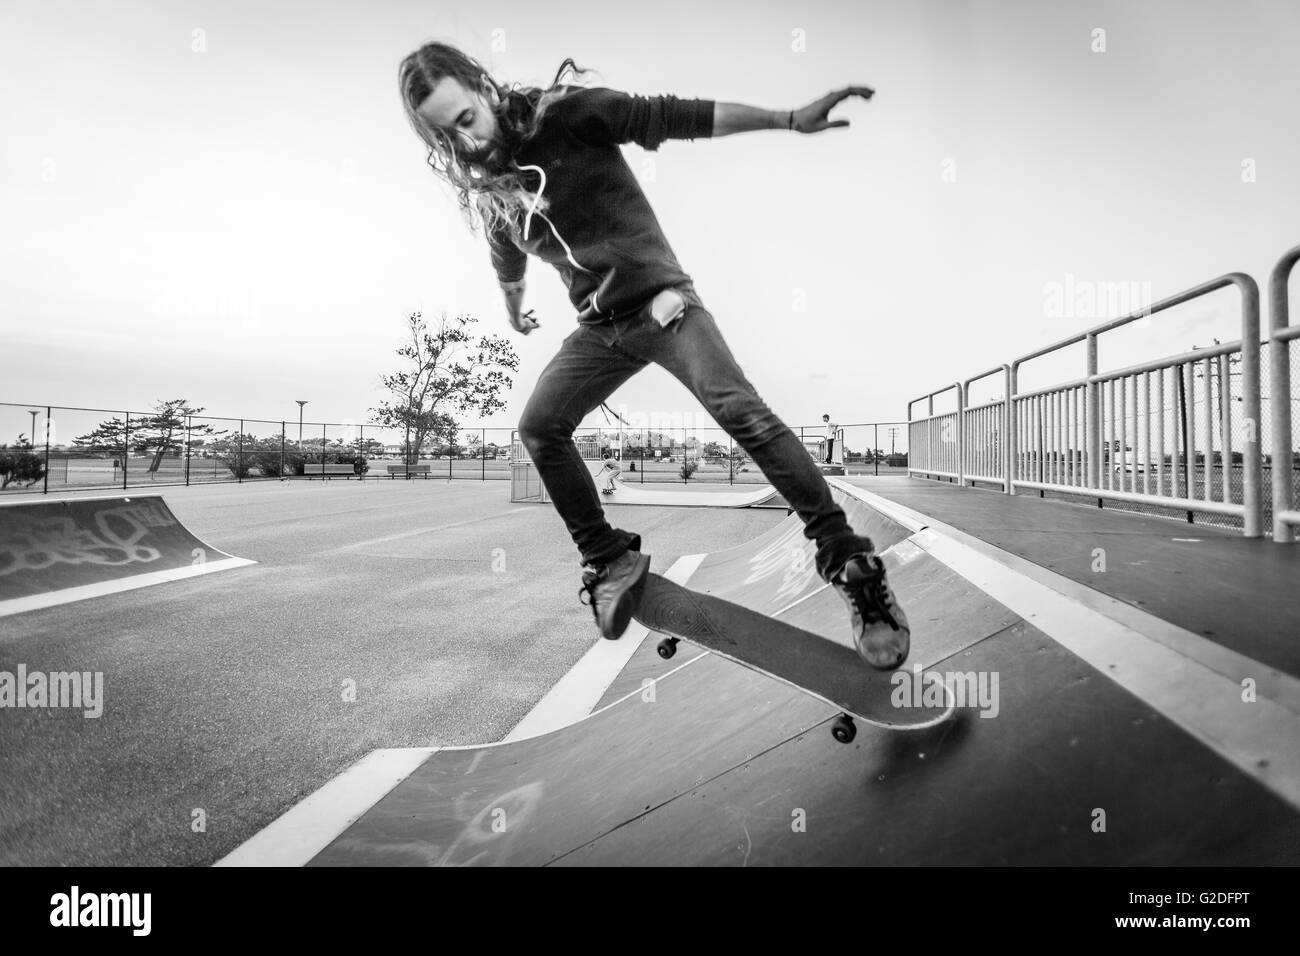 L'homme des jeunes adultes faisant des tours avec Skateboard à Skate Park Banque D'Images